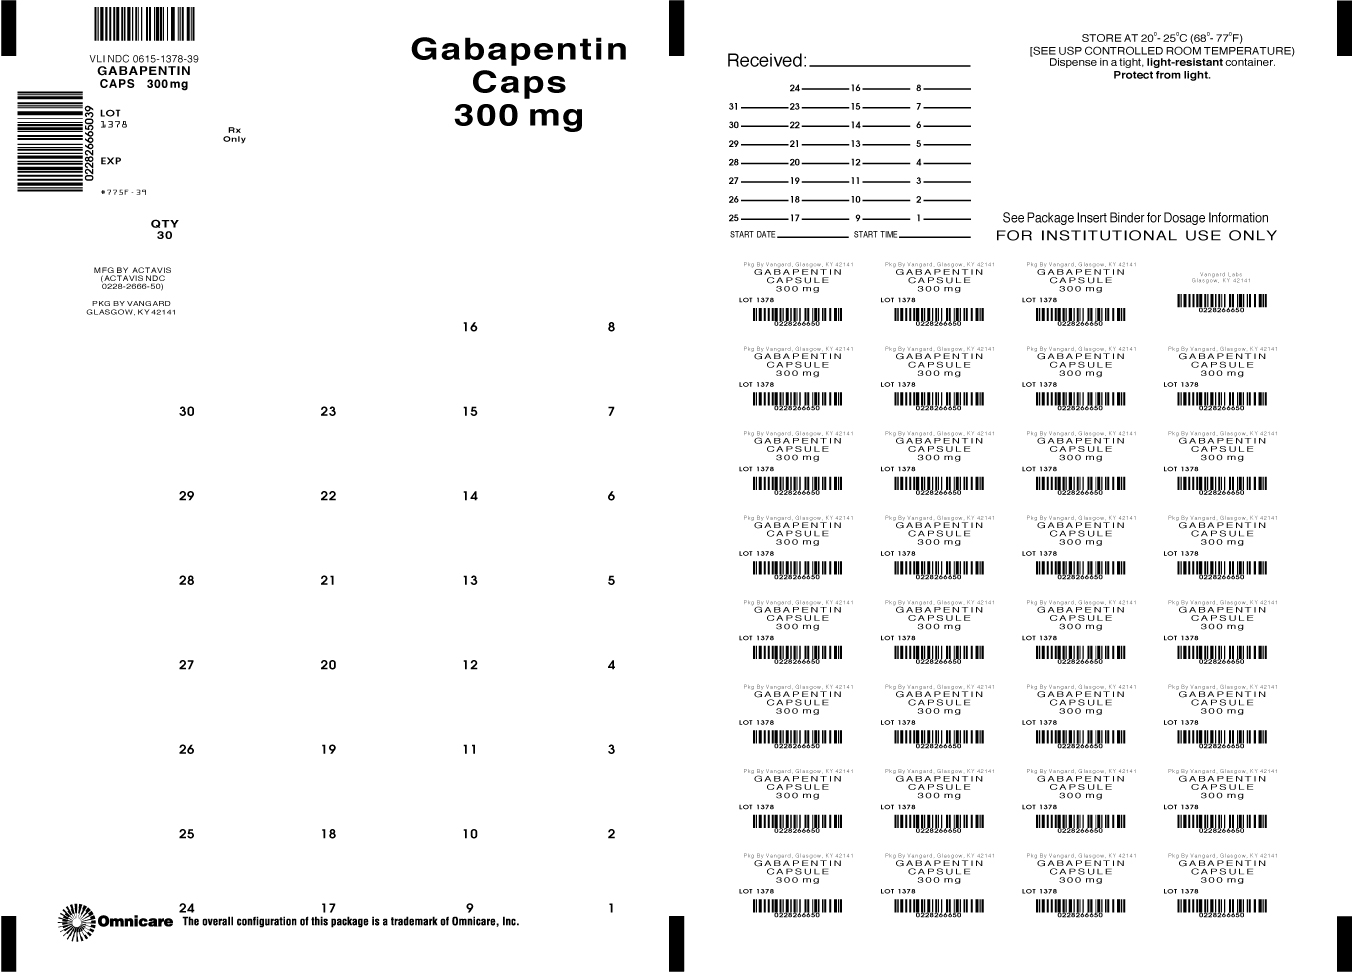 Principal Display Panel-Gabapentin Capsules 300mg